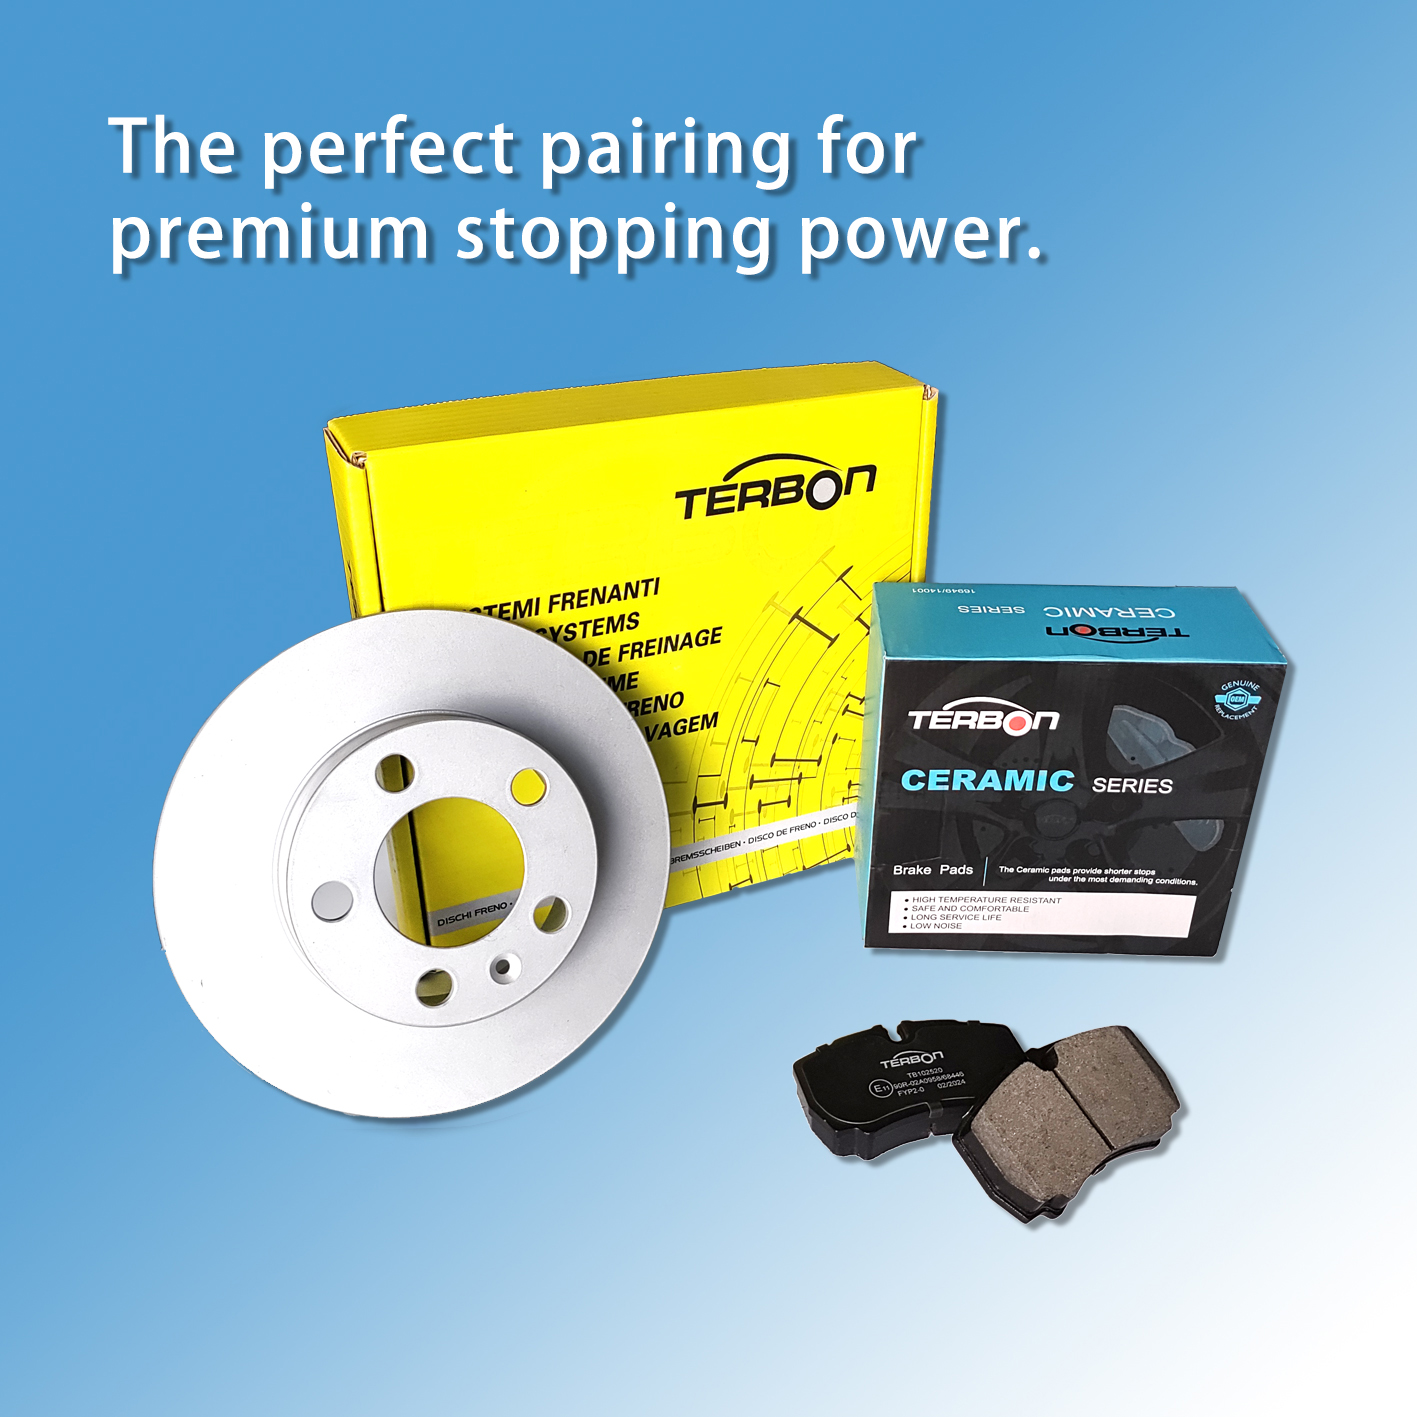 Terbon-ը ներկայացնում է բարձր արդյունավետության արգելակները՝ բարելավելու ձեր մեքենա վարելու անվտանգությունը